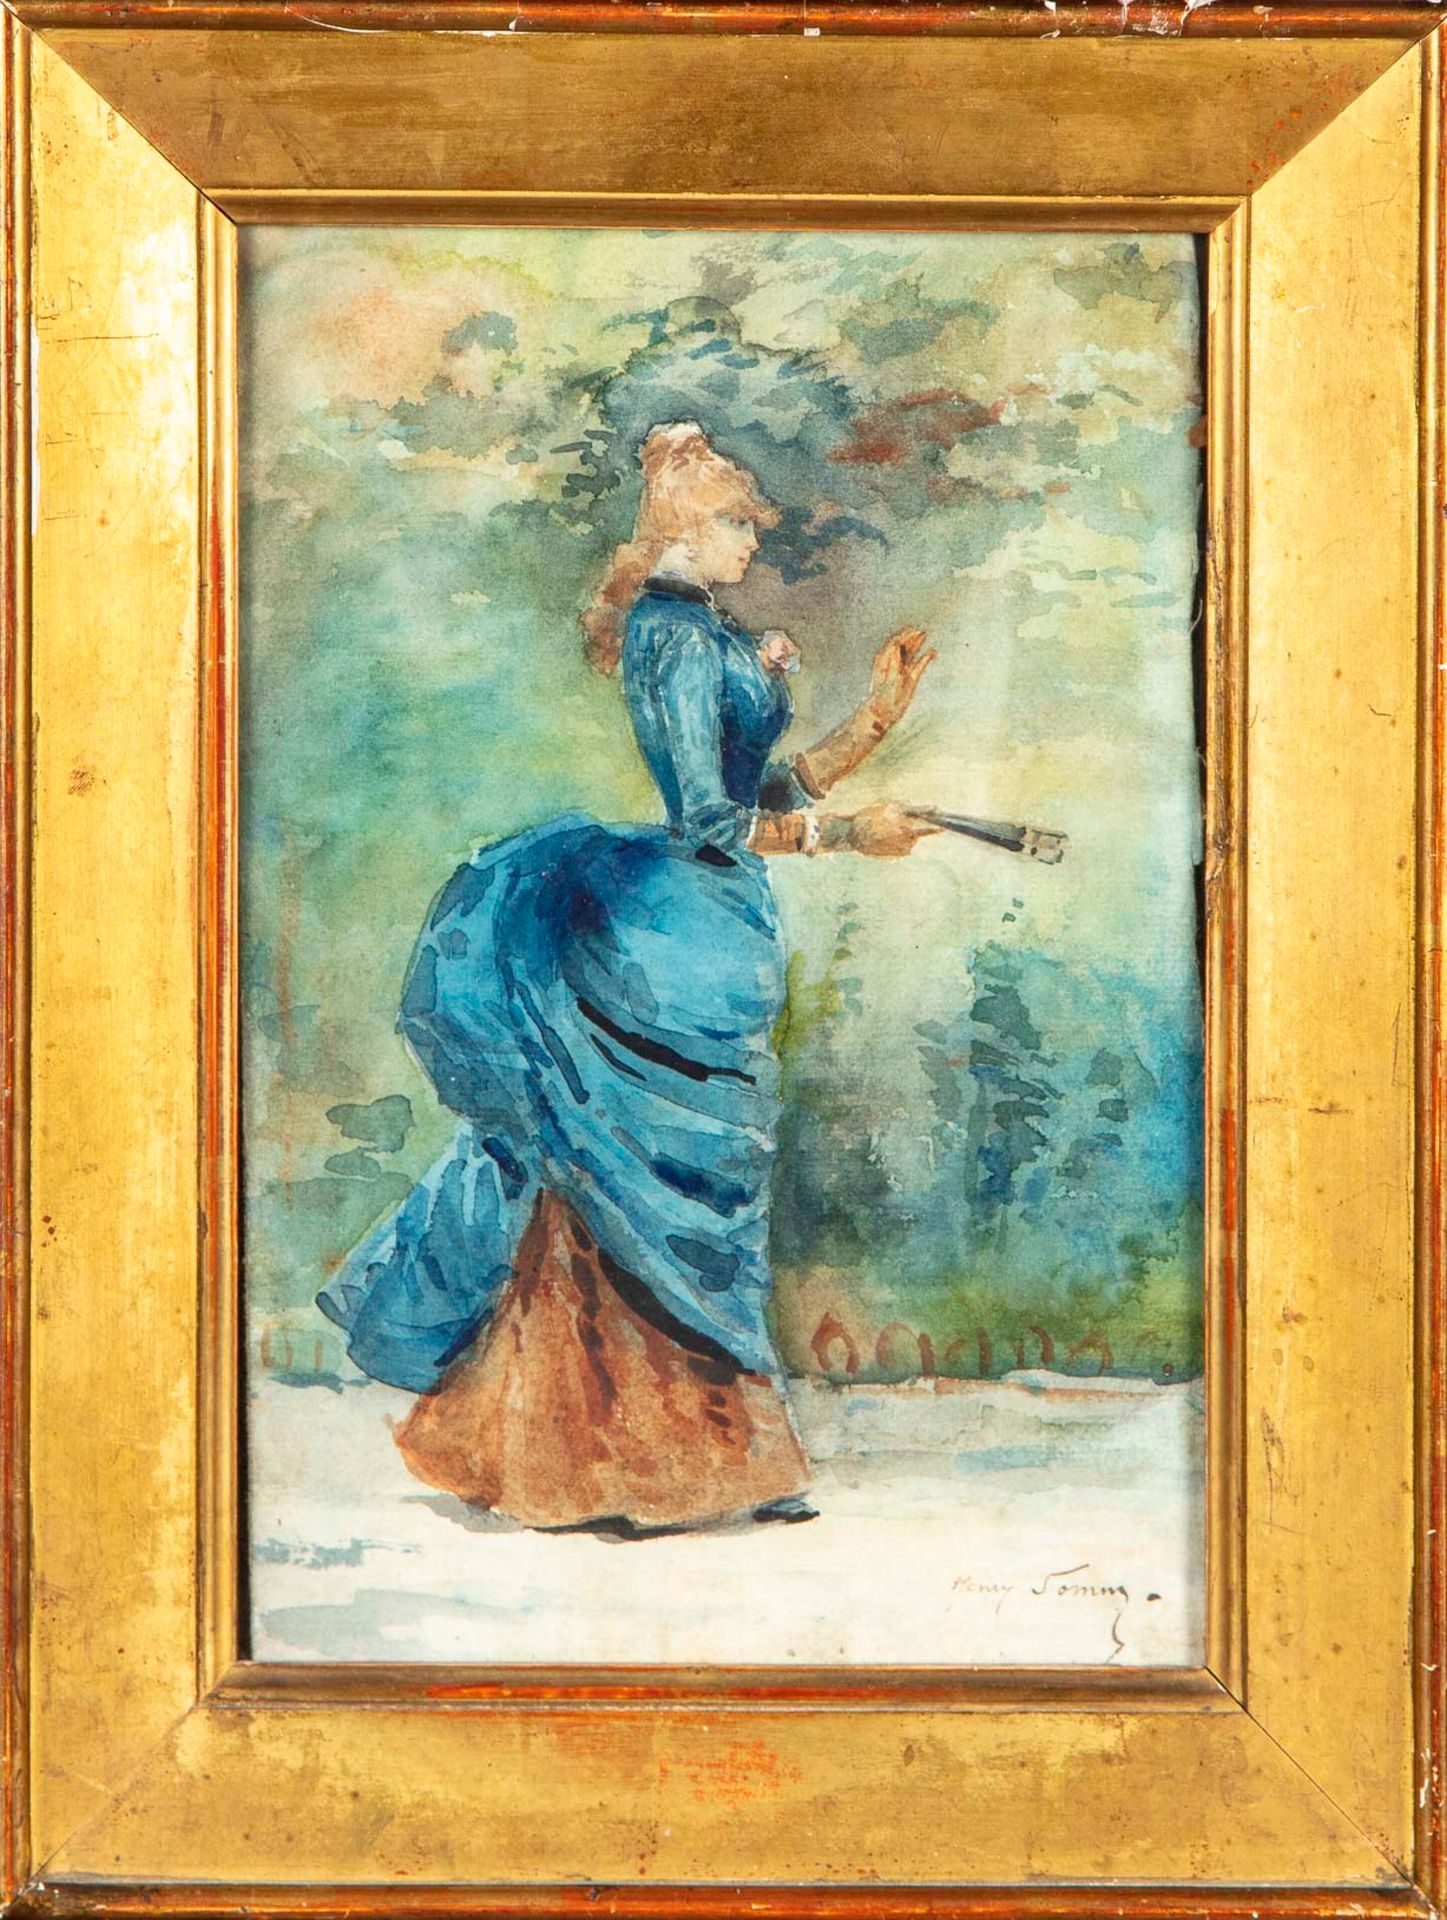 Henri SOMM Henri SOMM (1844-1907)

Elegant woman with a fan

Watercolor on paper&hellip;